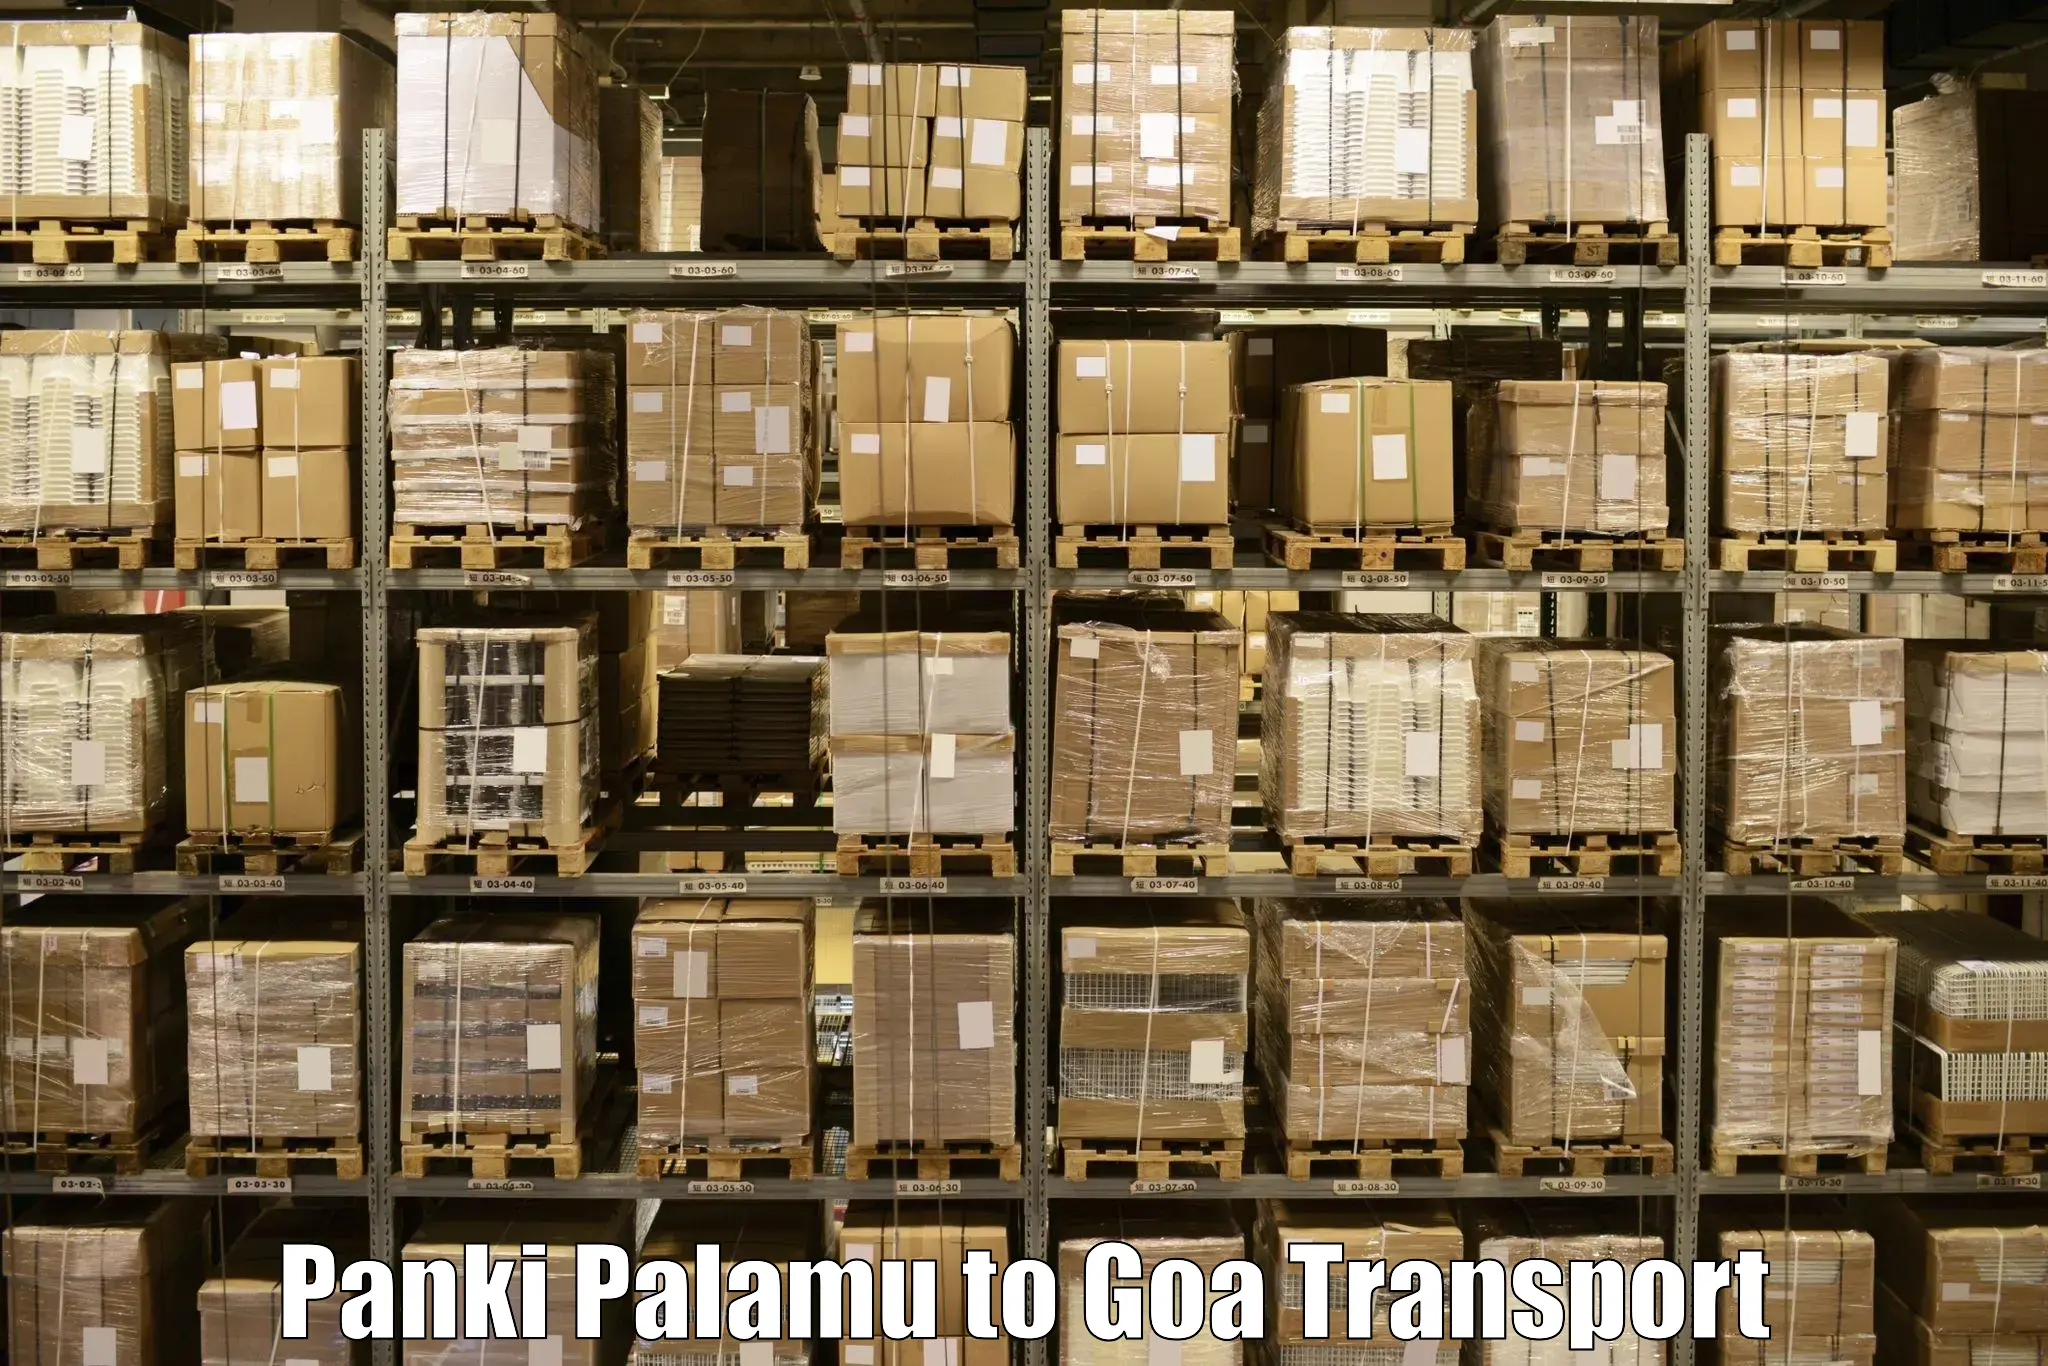 Daily transport service Panki Palamu to Goa